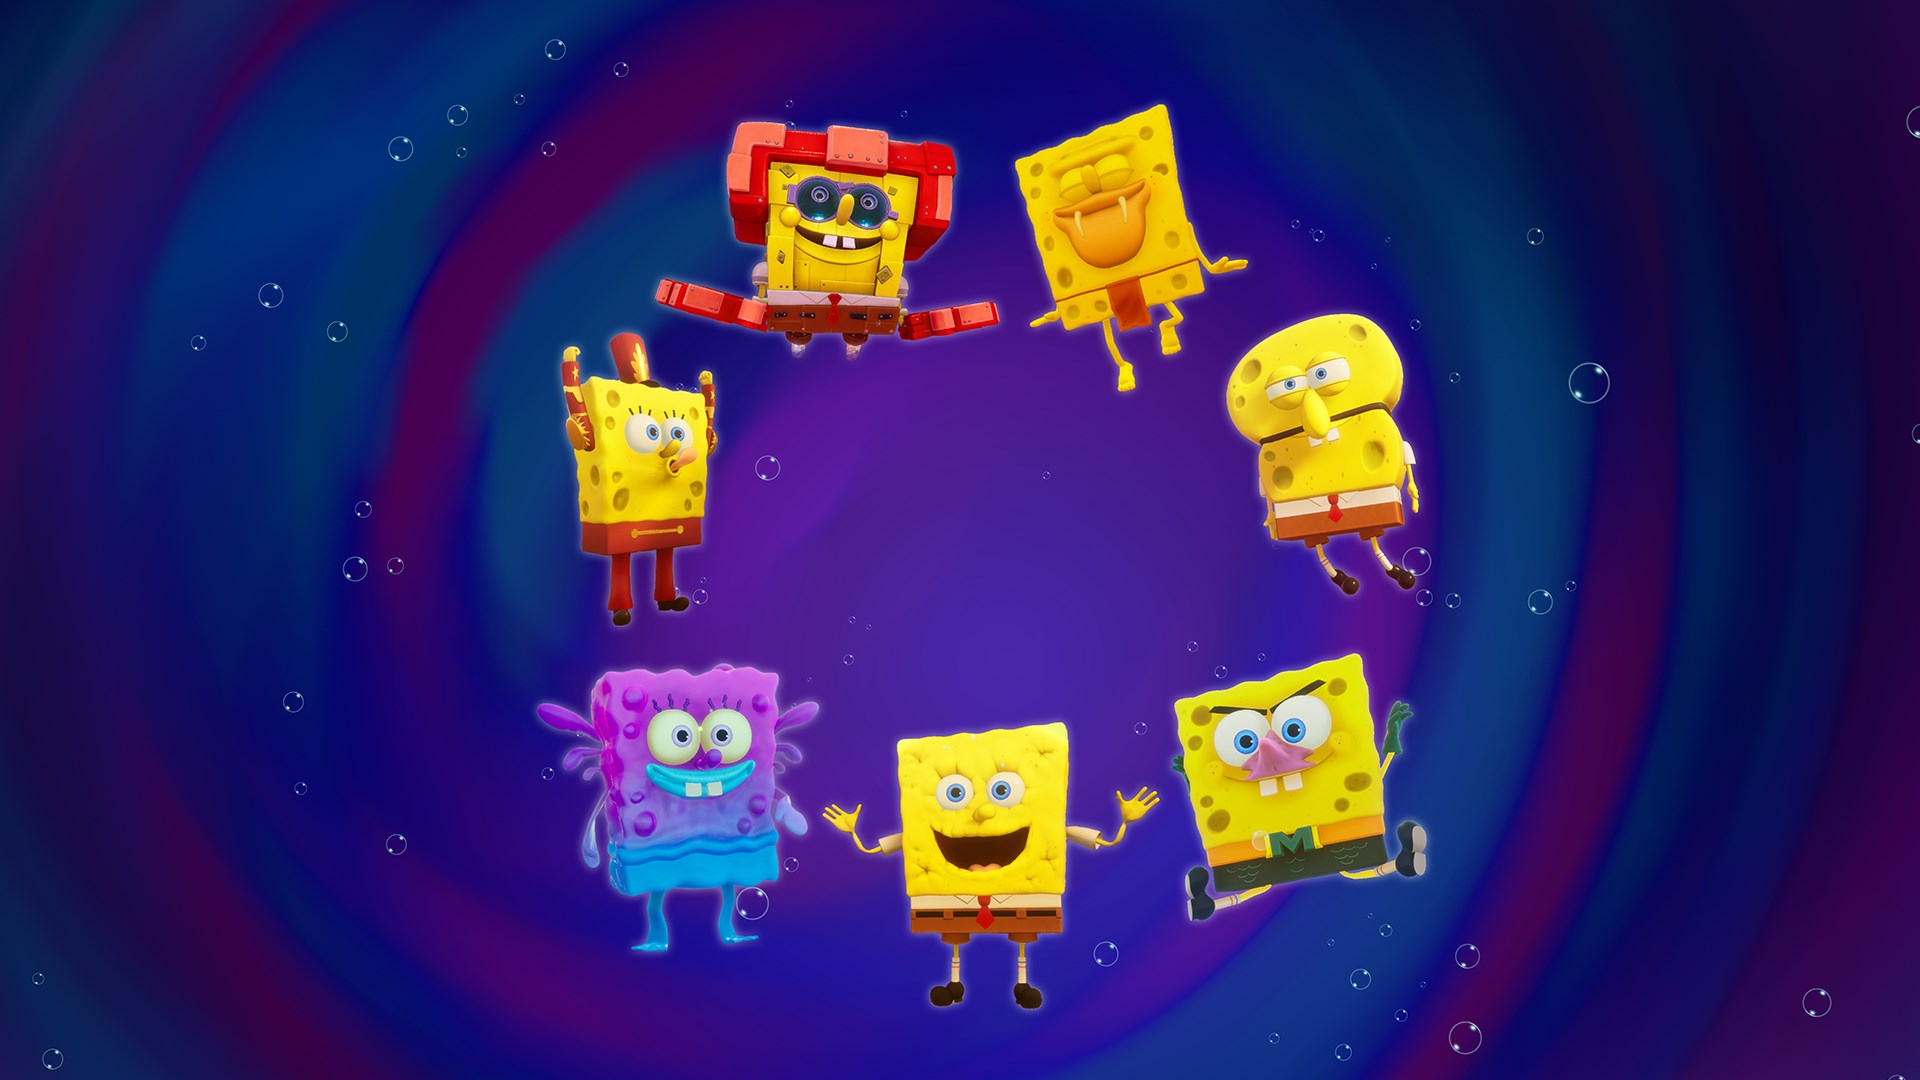 SpongeBob Sings Gary Come Home (AI Cover) 